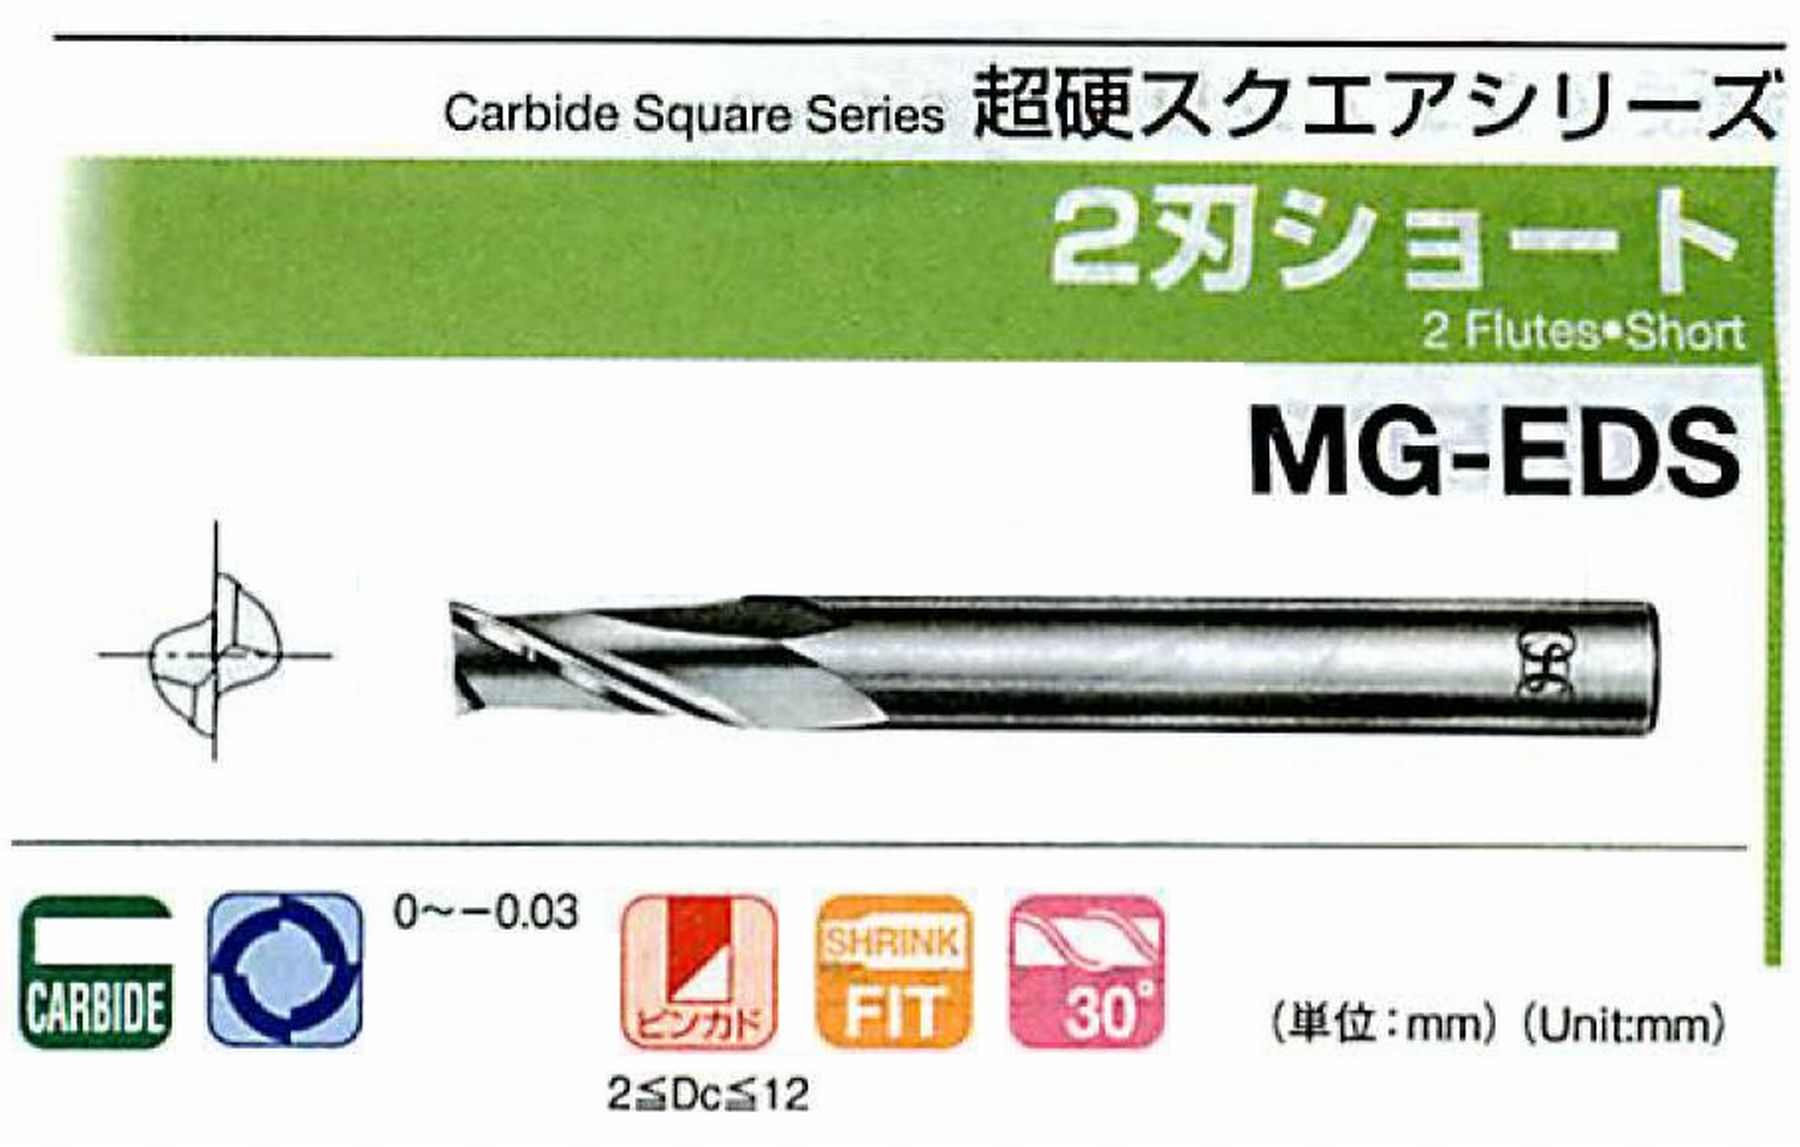 オーエスジー/OSG 2刃ショート MG-EDS 外径1.9 全長40 刃長5 シャンク径4mm [MG-EDS] - 4,095円 : 値打